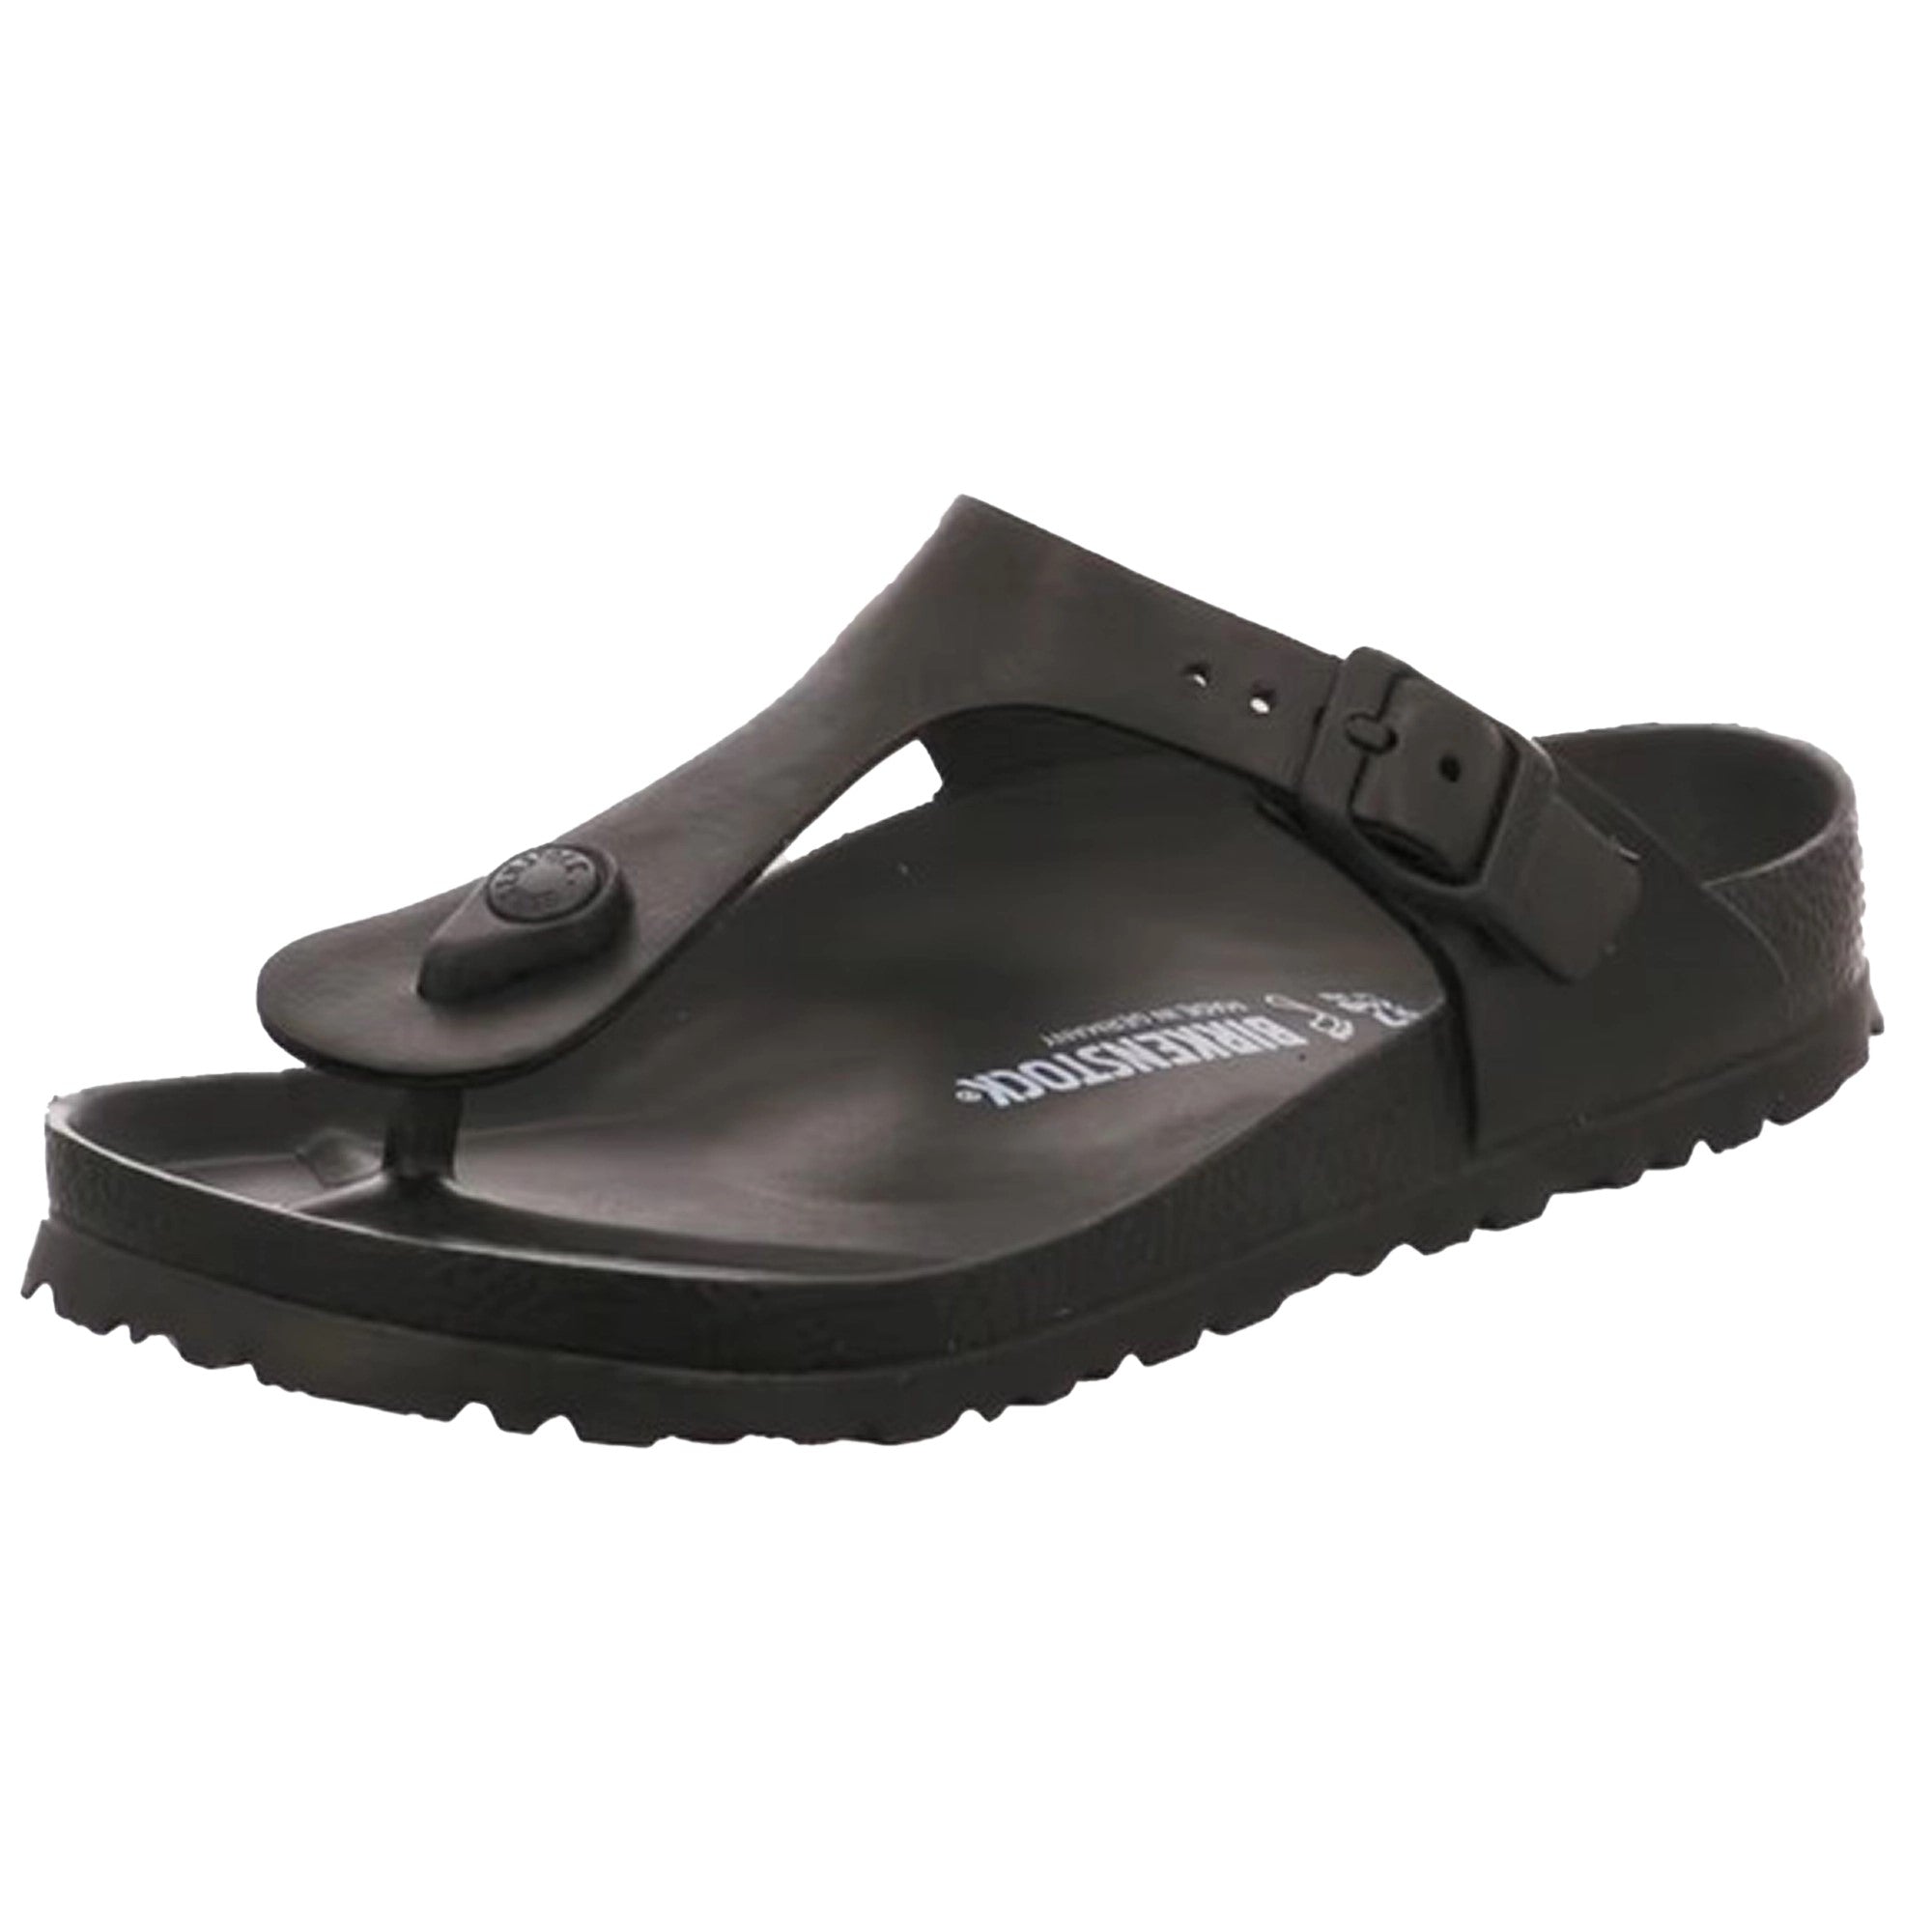 Birkenstock Gizeh EVA Slides Sandals Buckle Beach Summer water resistant Men